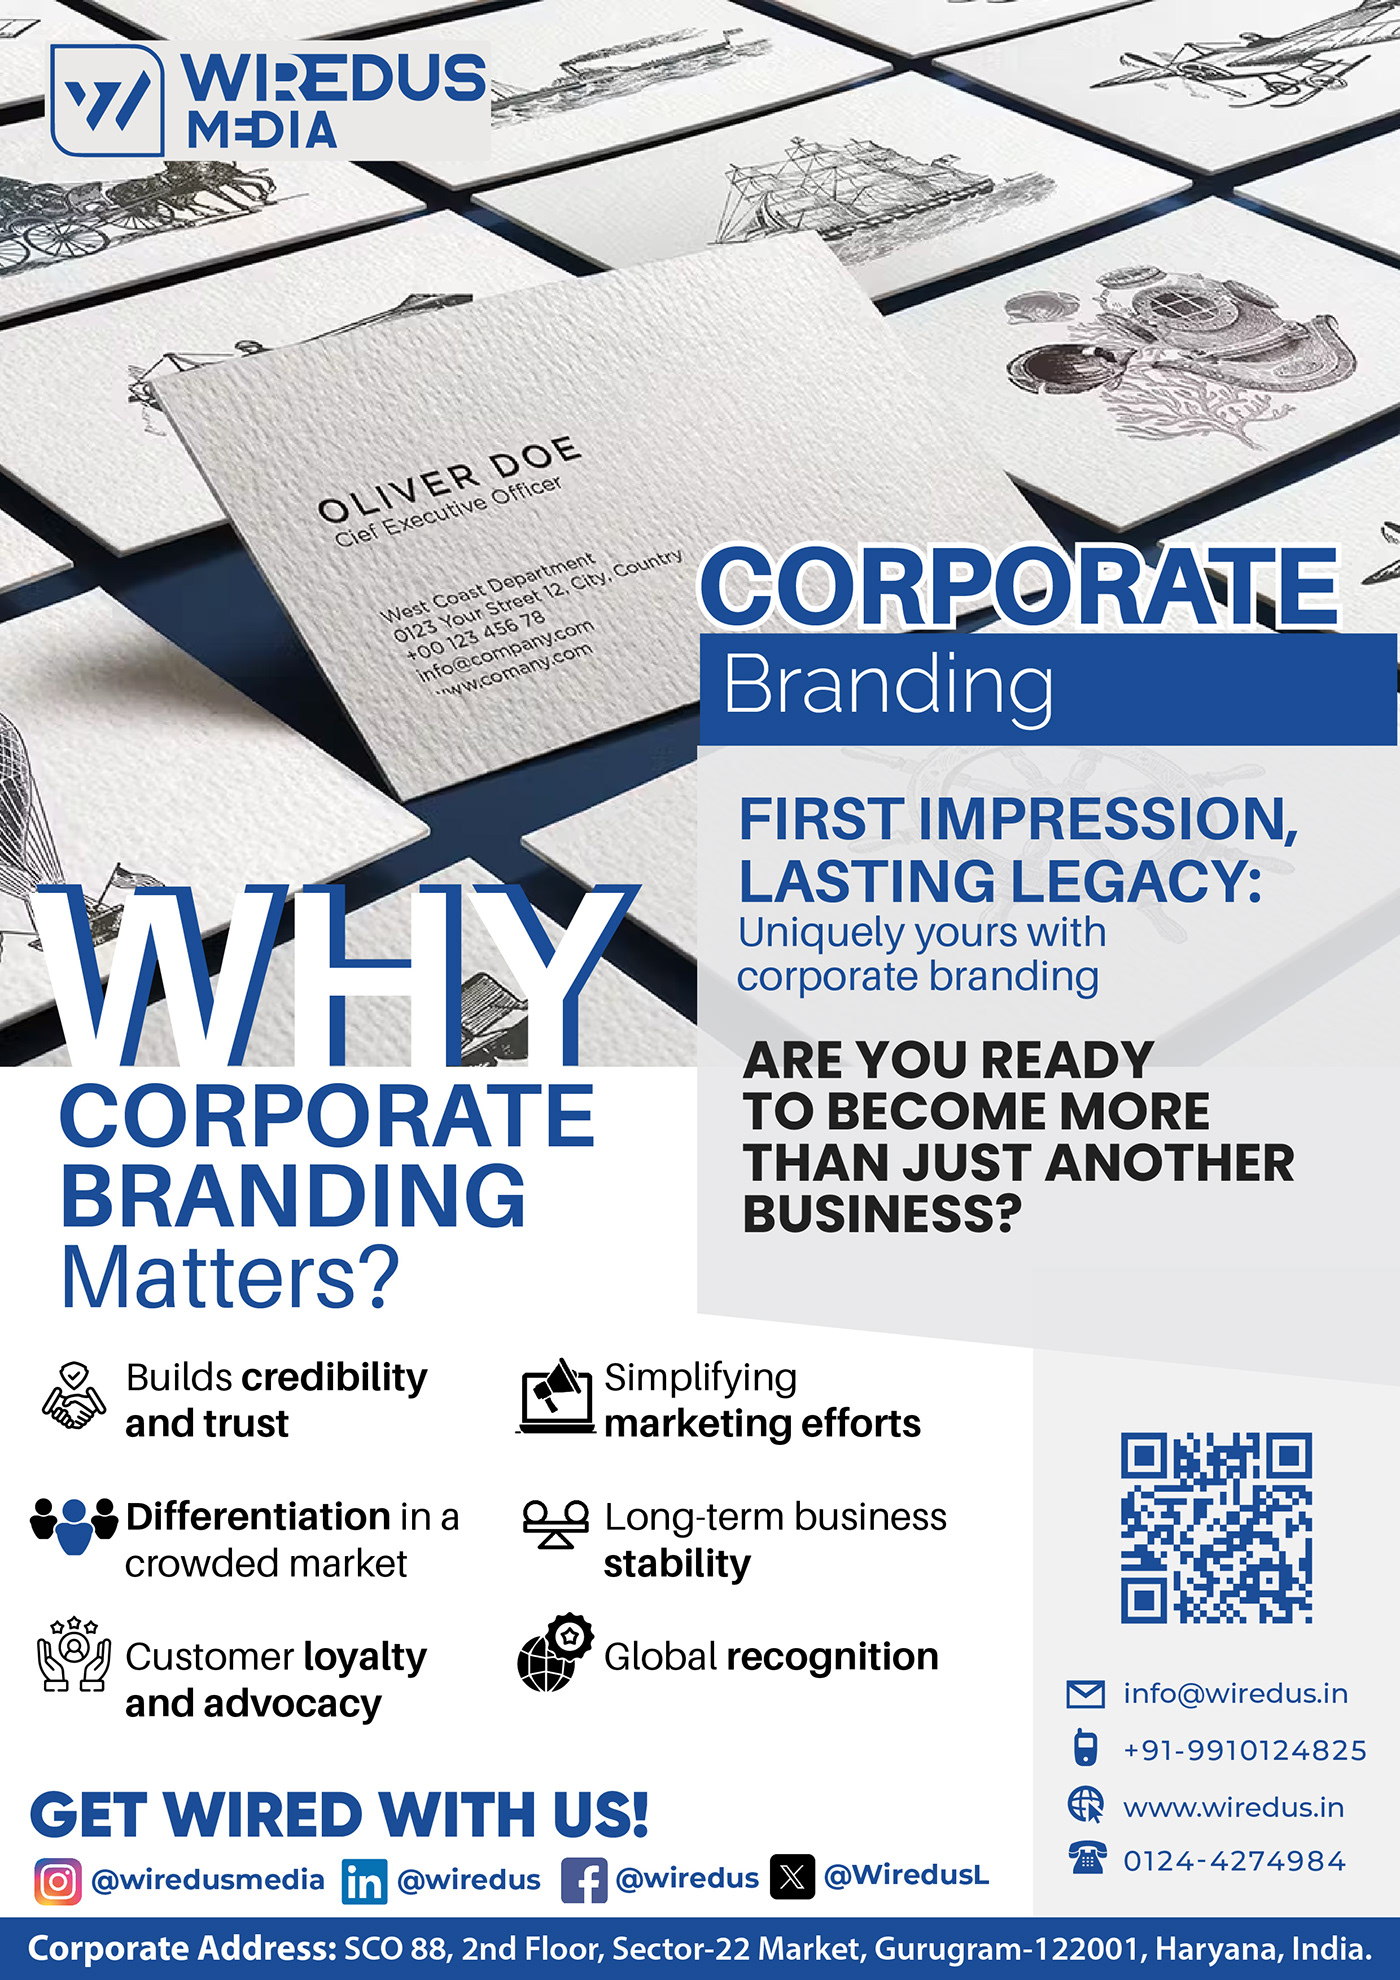 flyers marketing agency digital illustration adobe illustrator Social media post Graphic Designer brand identity Advertising  marketing  